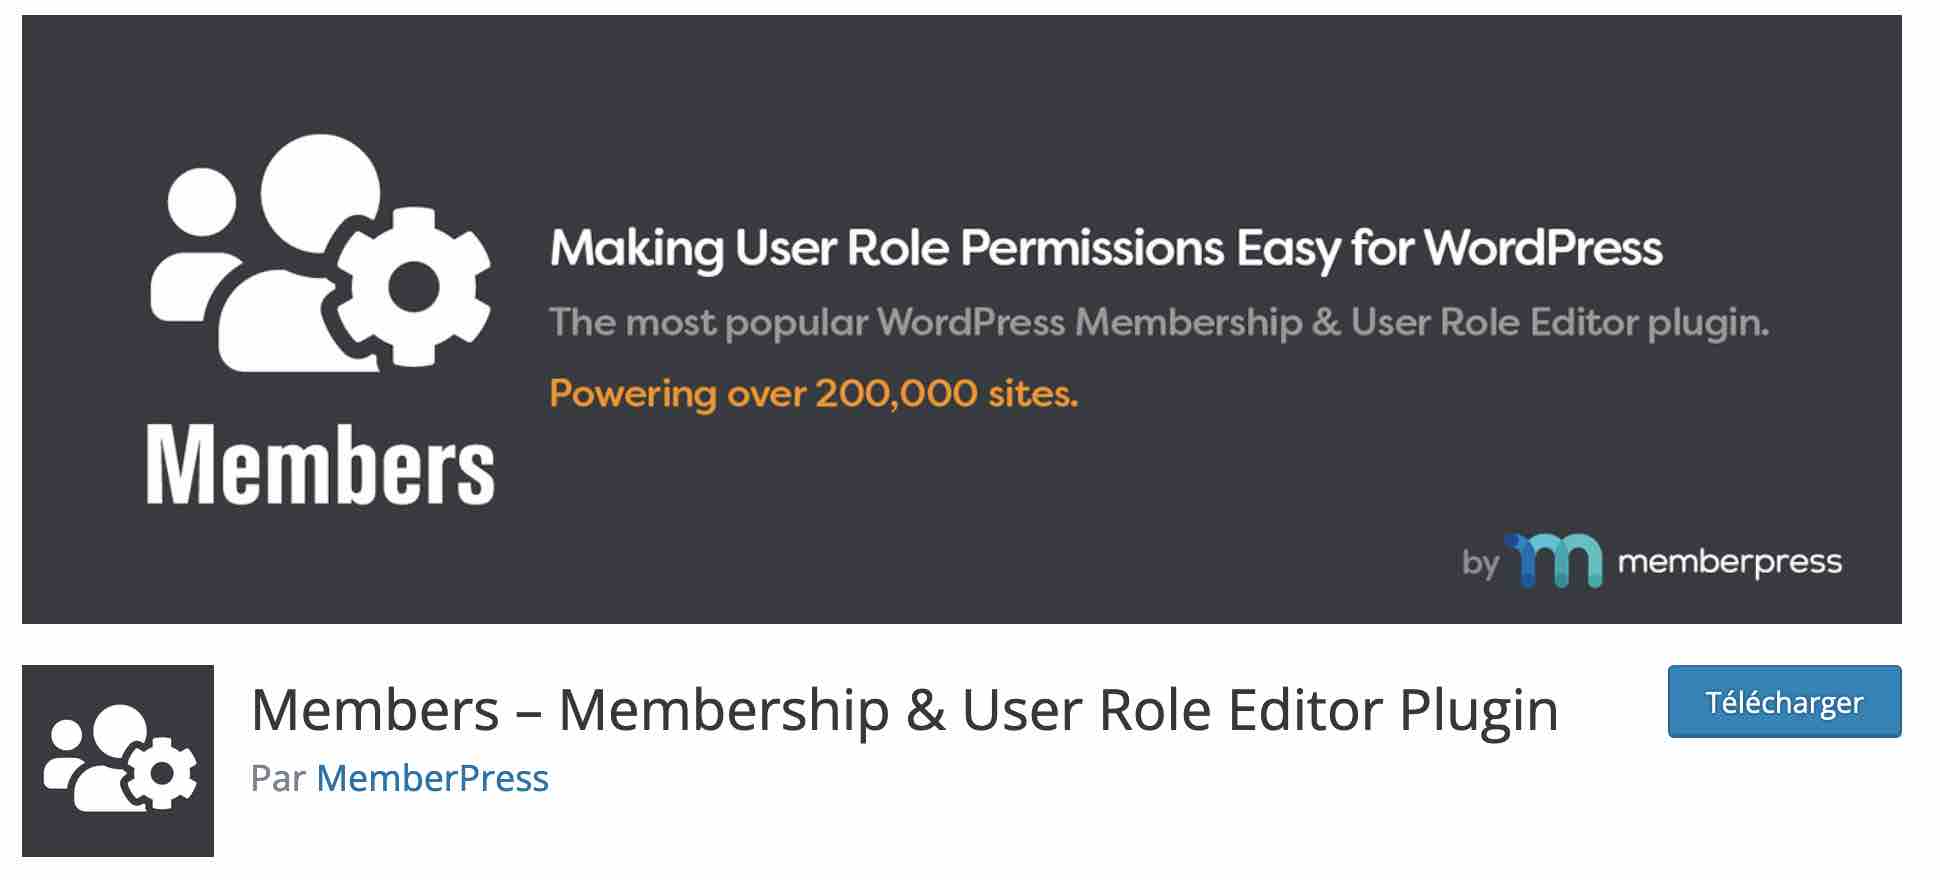 Members permet de personnaliser les permissions d'un rôle utilisateur WordPress.